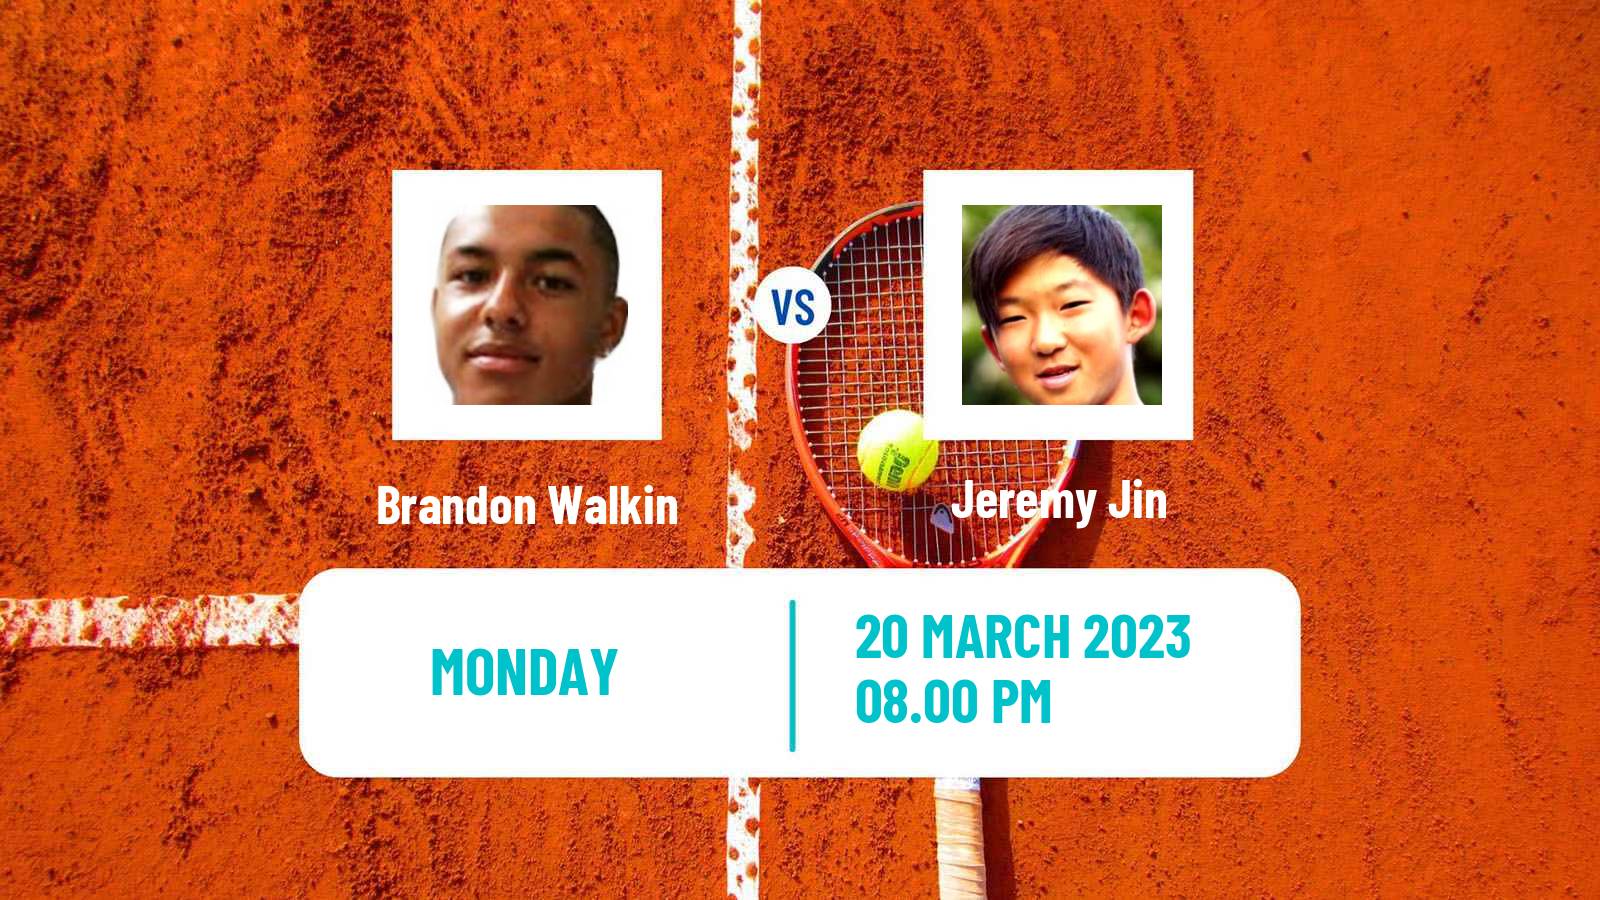 Tennis ITF Tournaments Brandon Walkin - Jeremy Jin